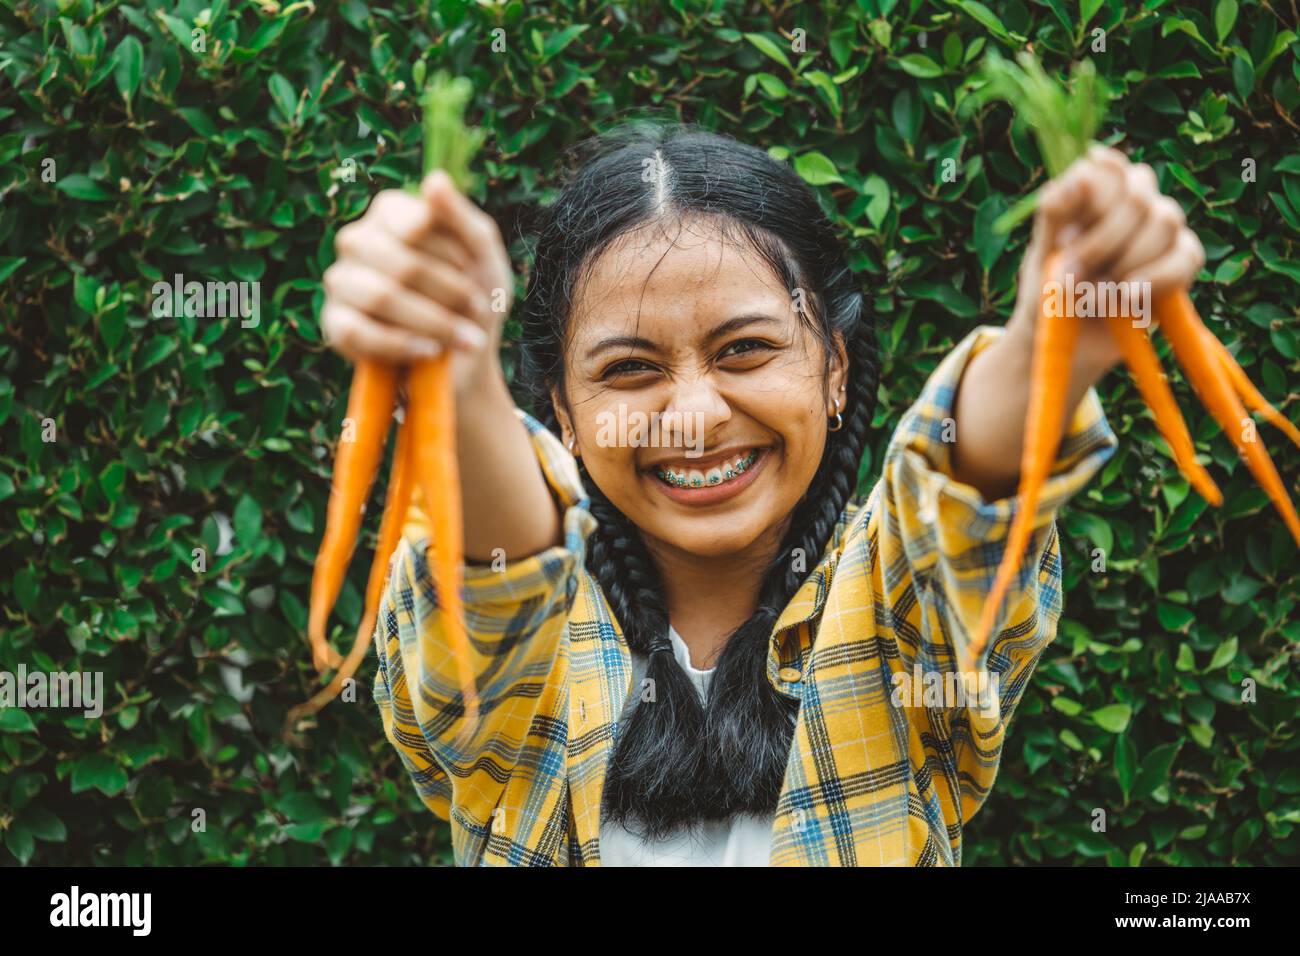 mangiare verdure vegane per sano bene per concetto di vita. giovane mano teen tenendo bambino carota sorriso felice. Foto Stock